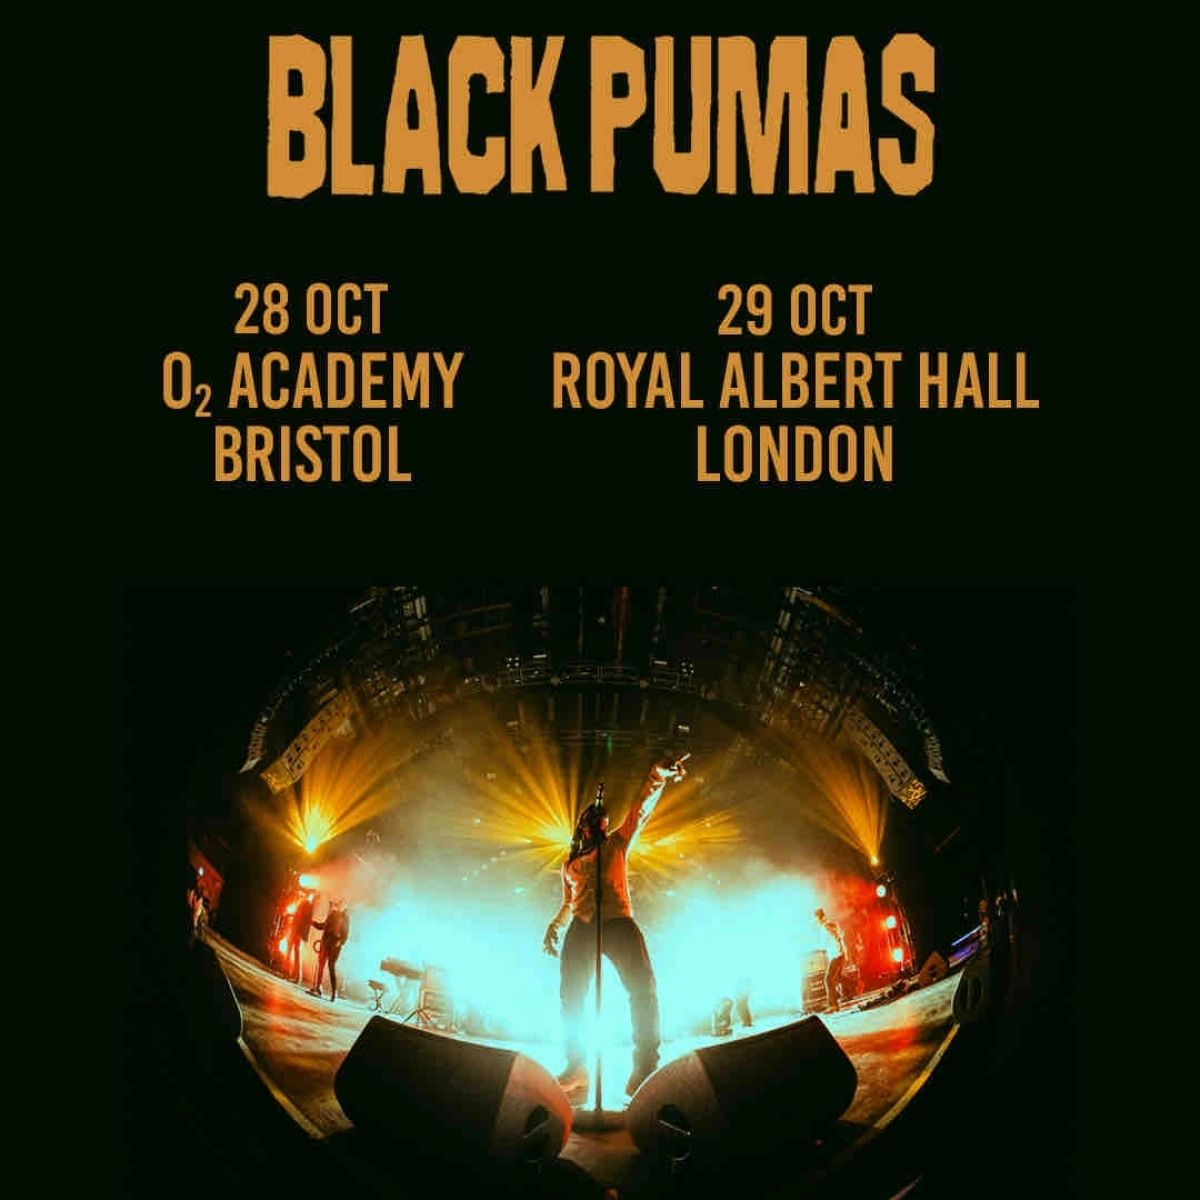 Black Pumas at Royal Albert Hall Tickets